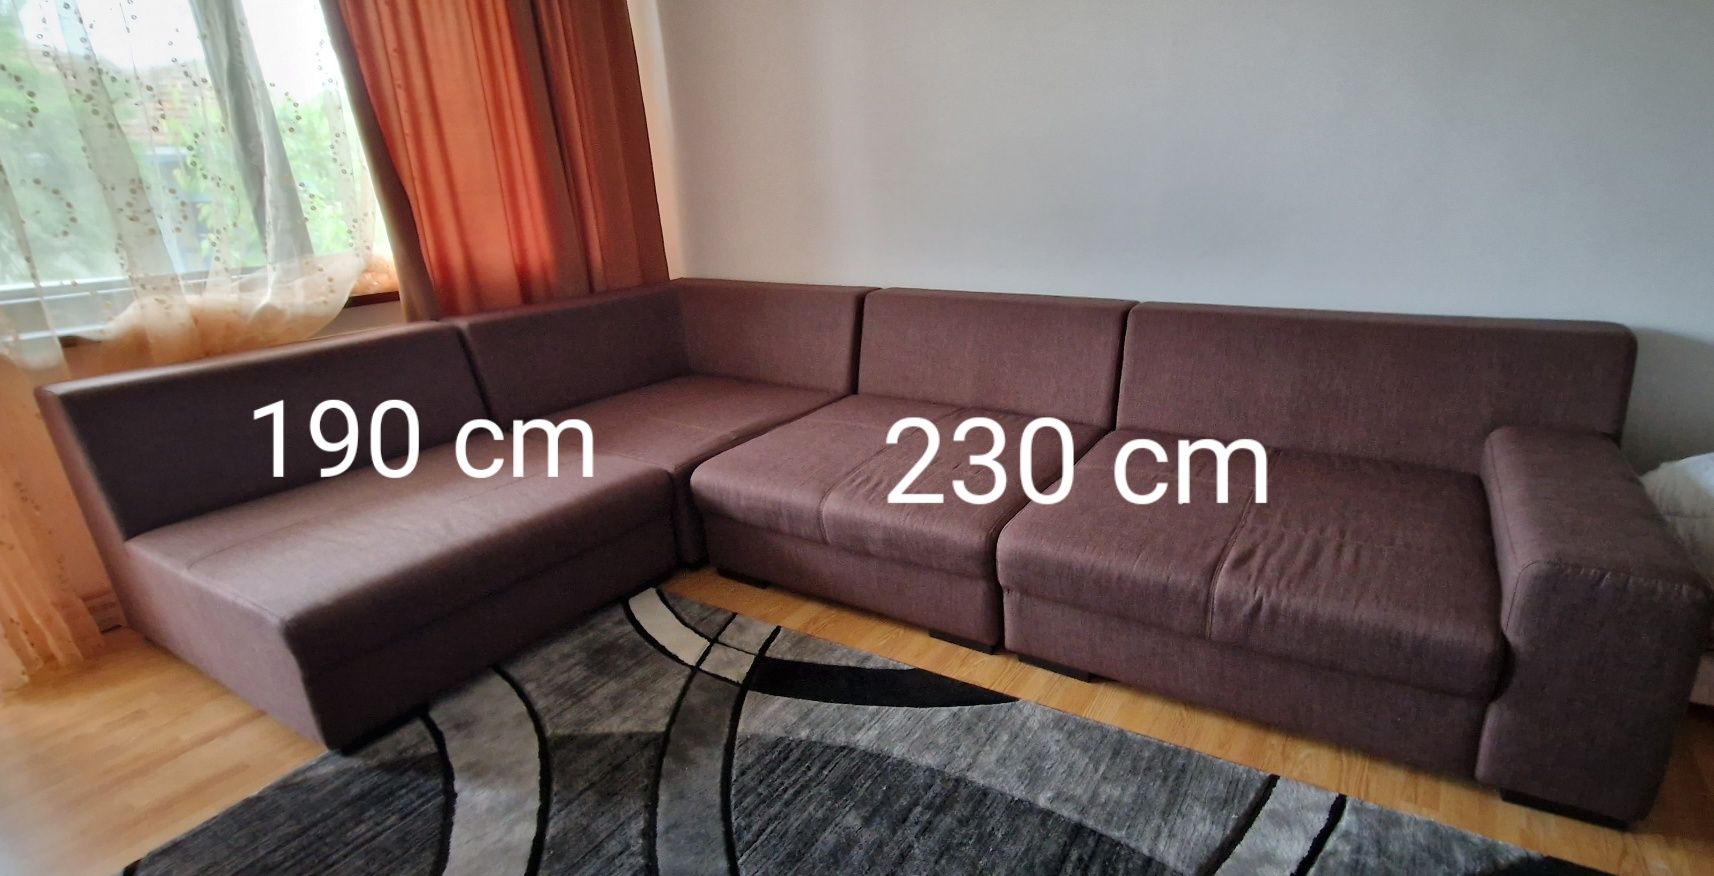 Canapea sufragerie, nu este extensibilă